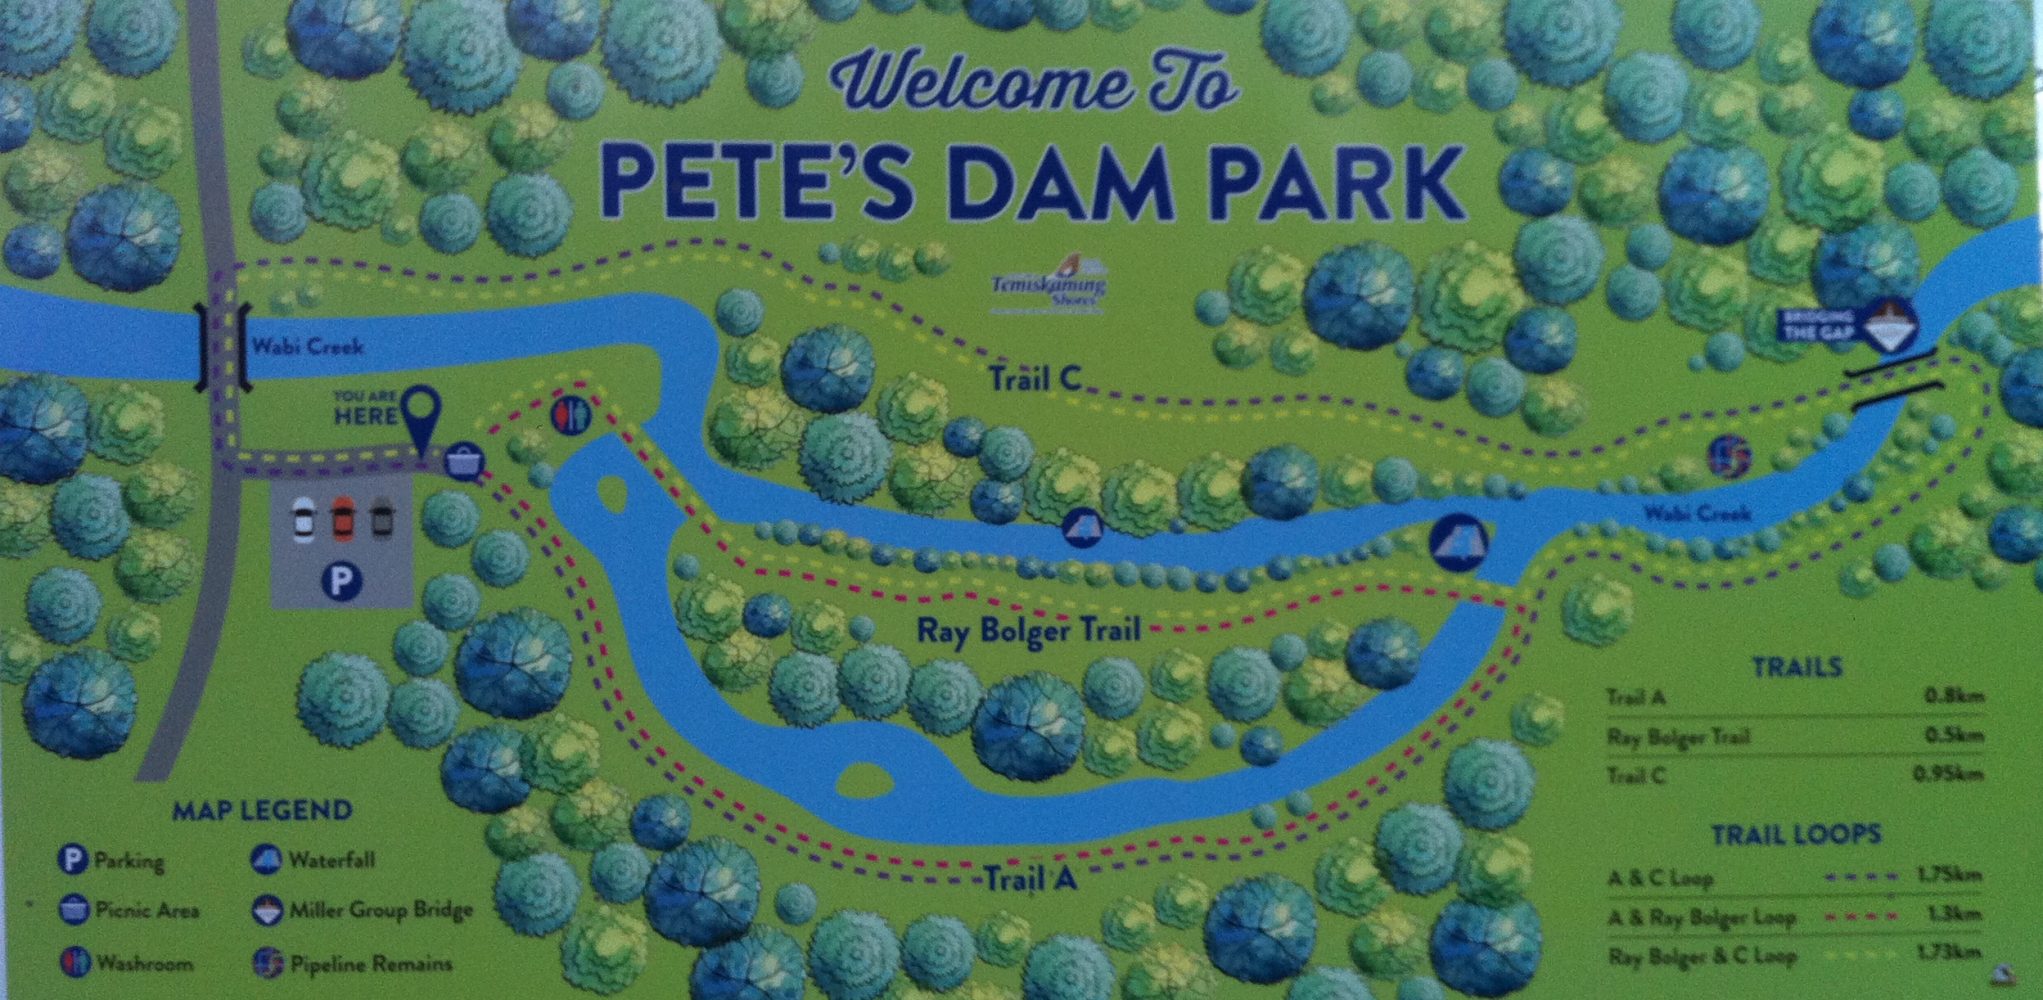 Pete's Dam Park trail system map / carte des sentiers au site de Pete's Dam à Temiskaming Shores.